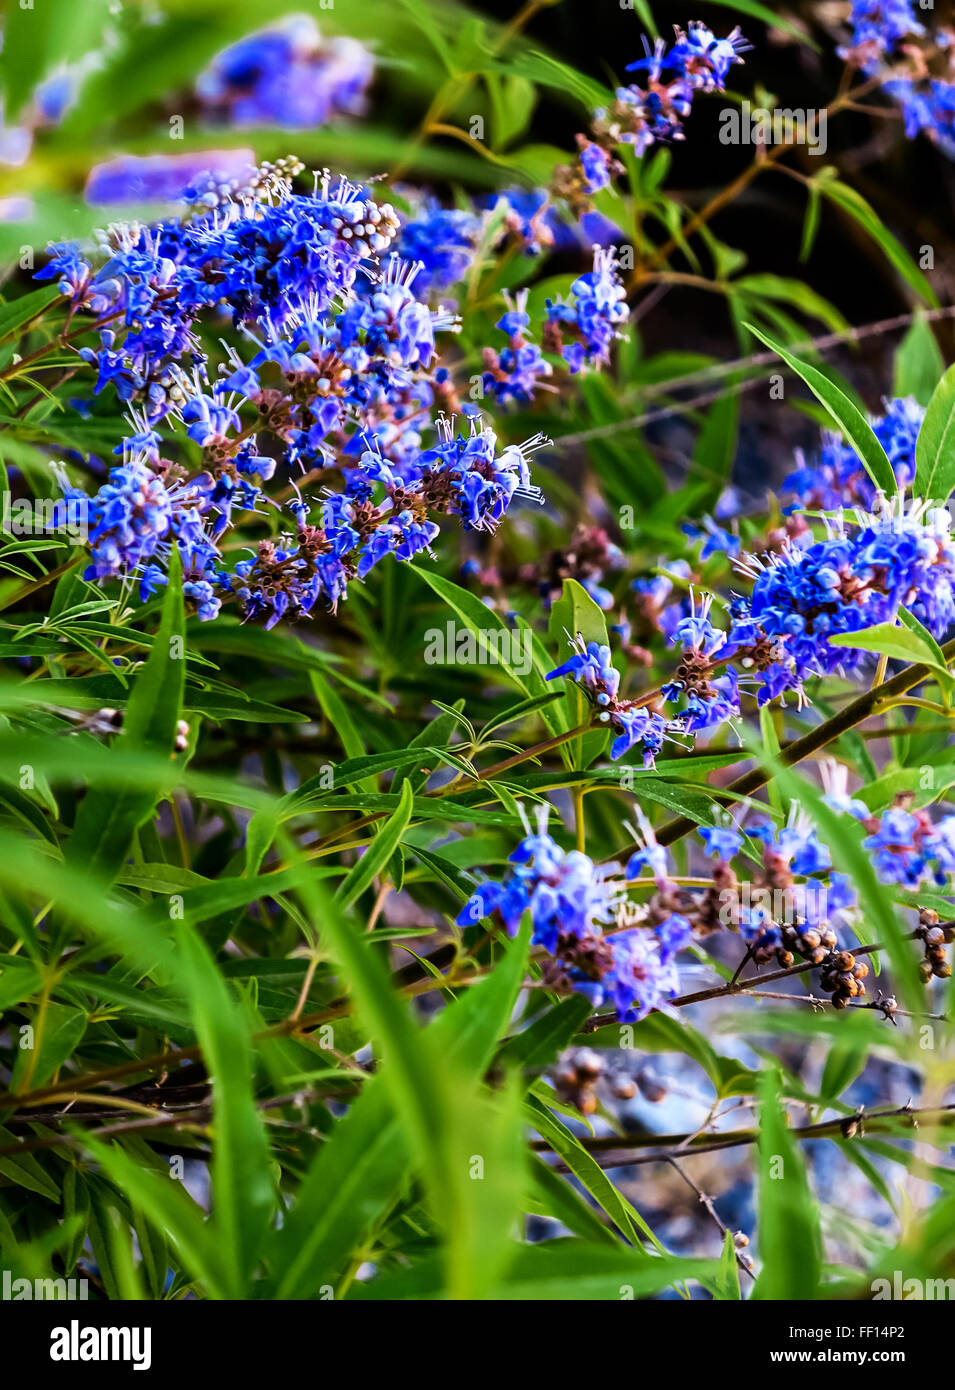 Blue flowering plant Chaste Tree or Monk's pepper (Vitex agnus) Stock Photo